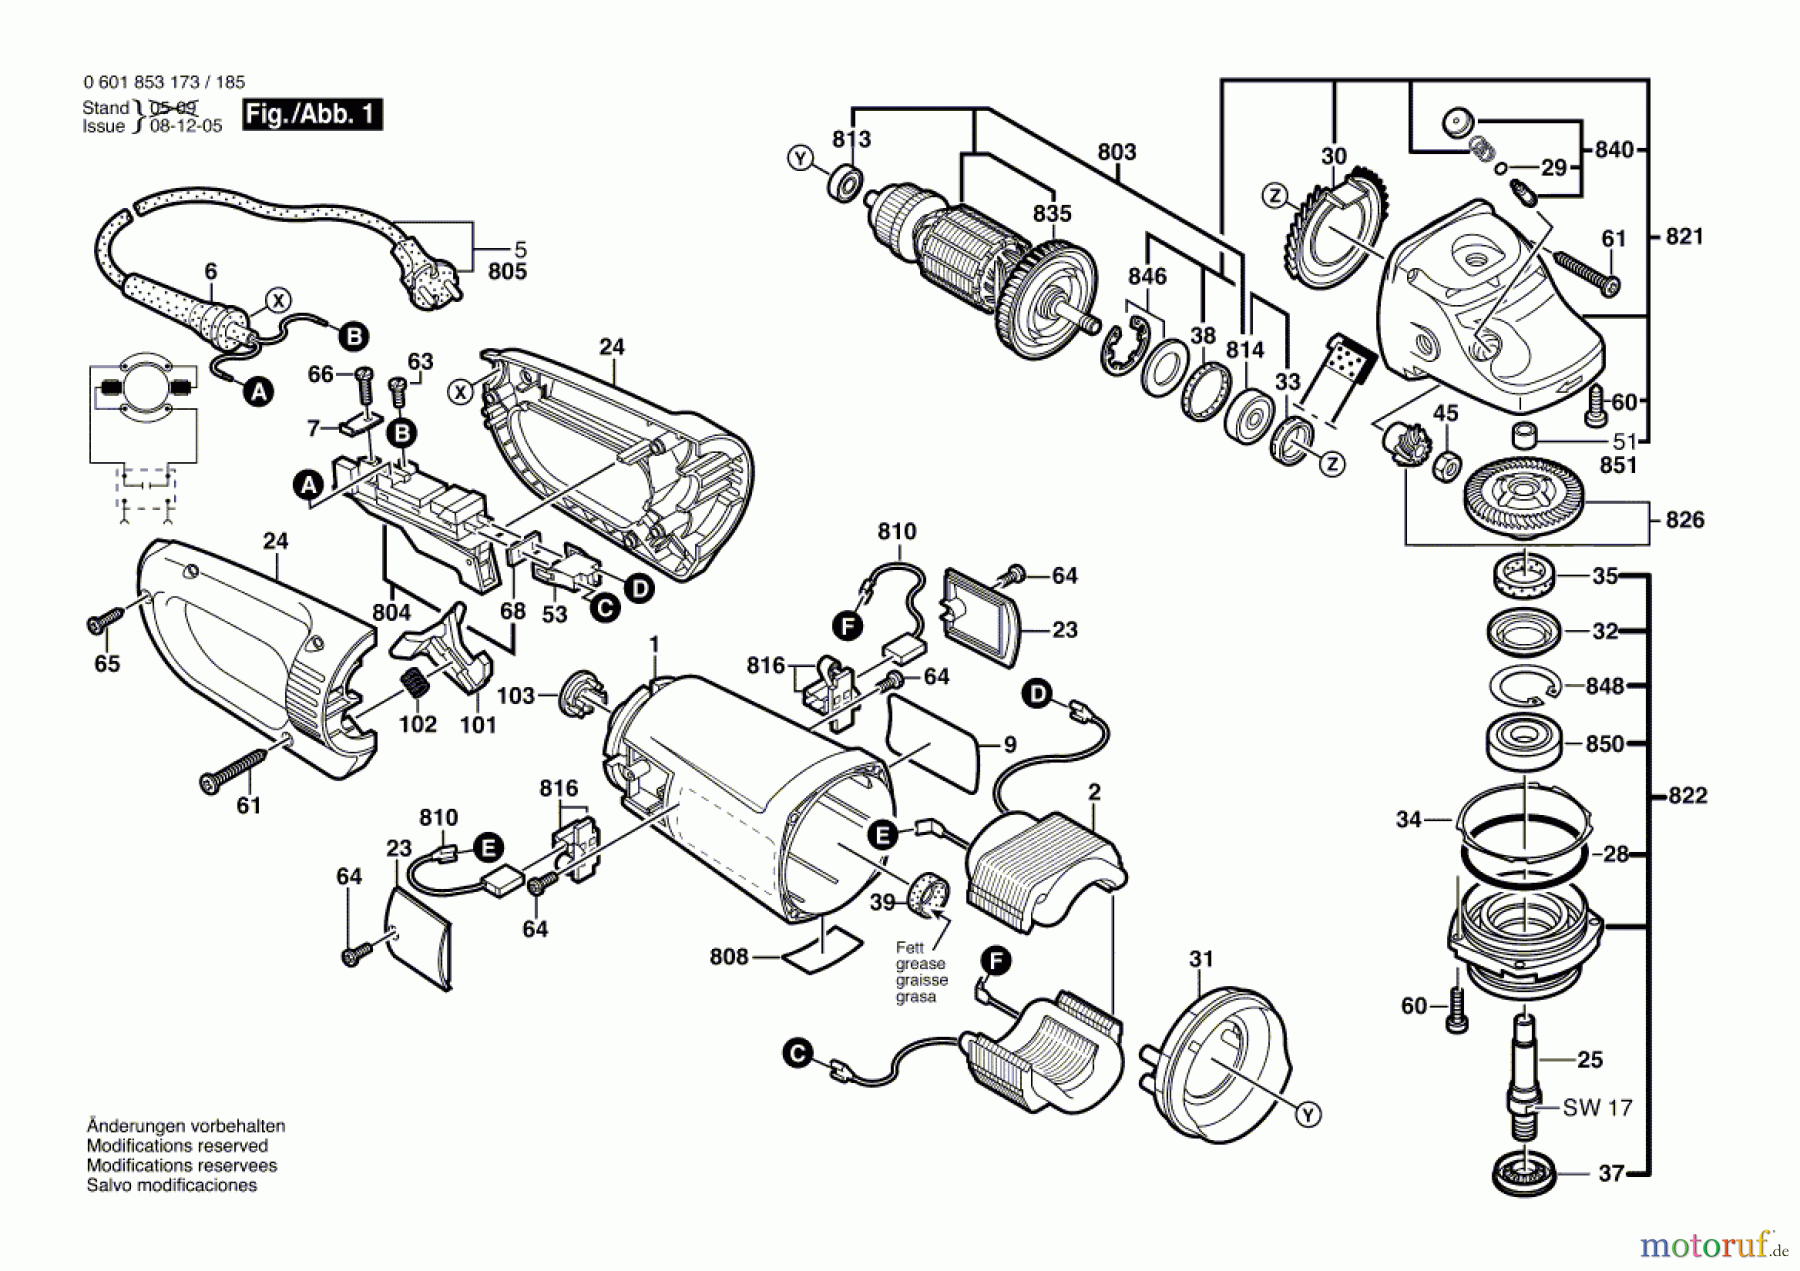  Bosch Werkzeug Winkelschleifer GWS 24-180 B Seite 1